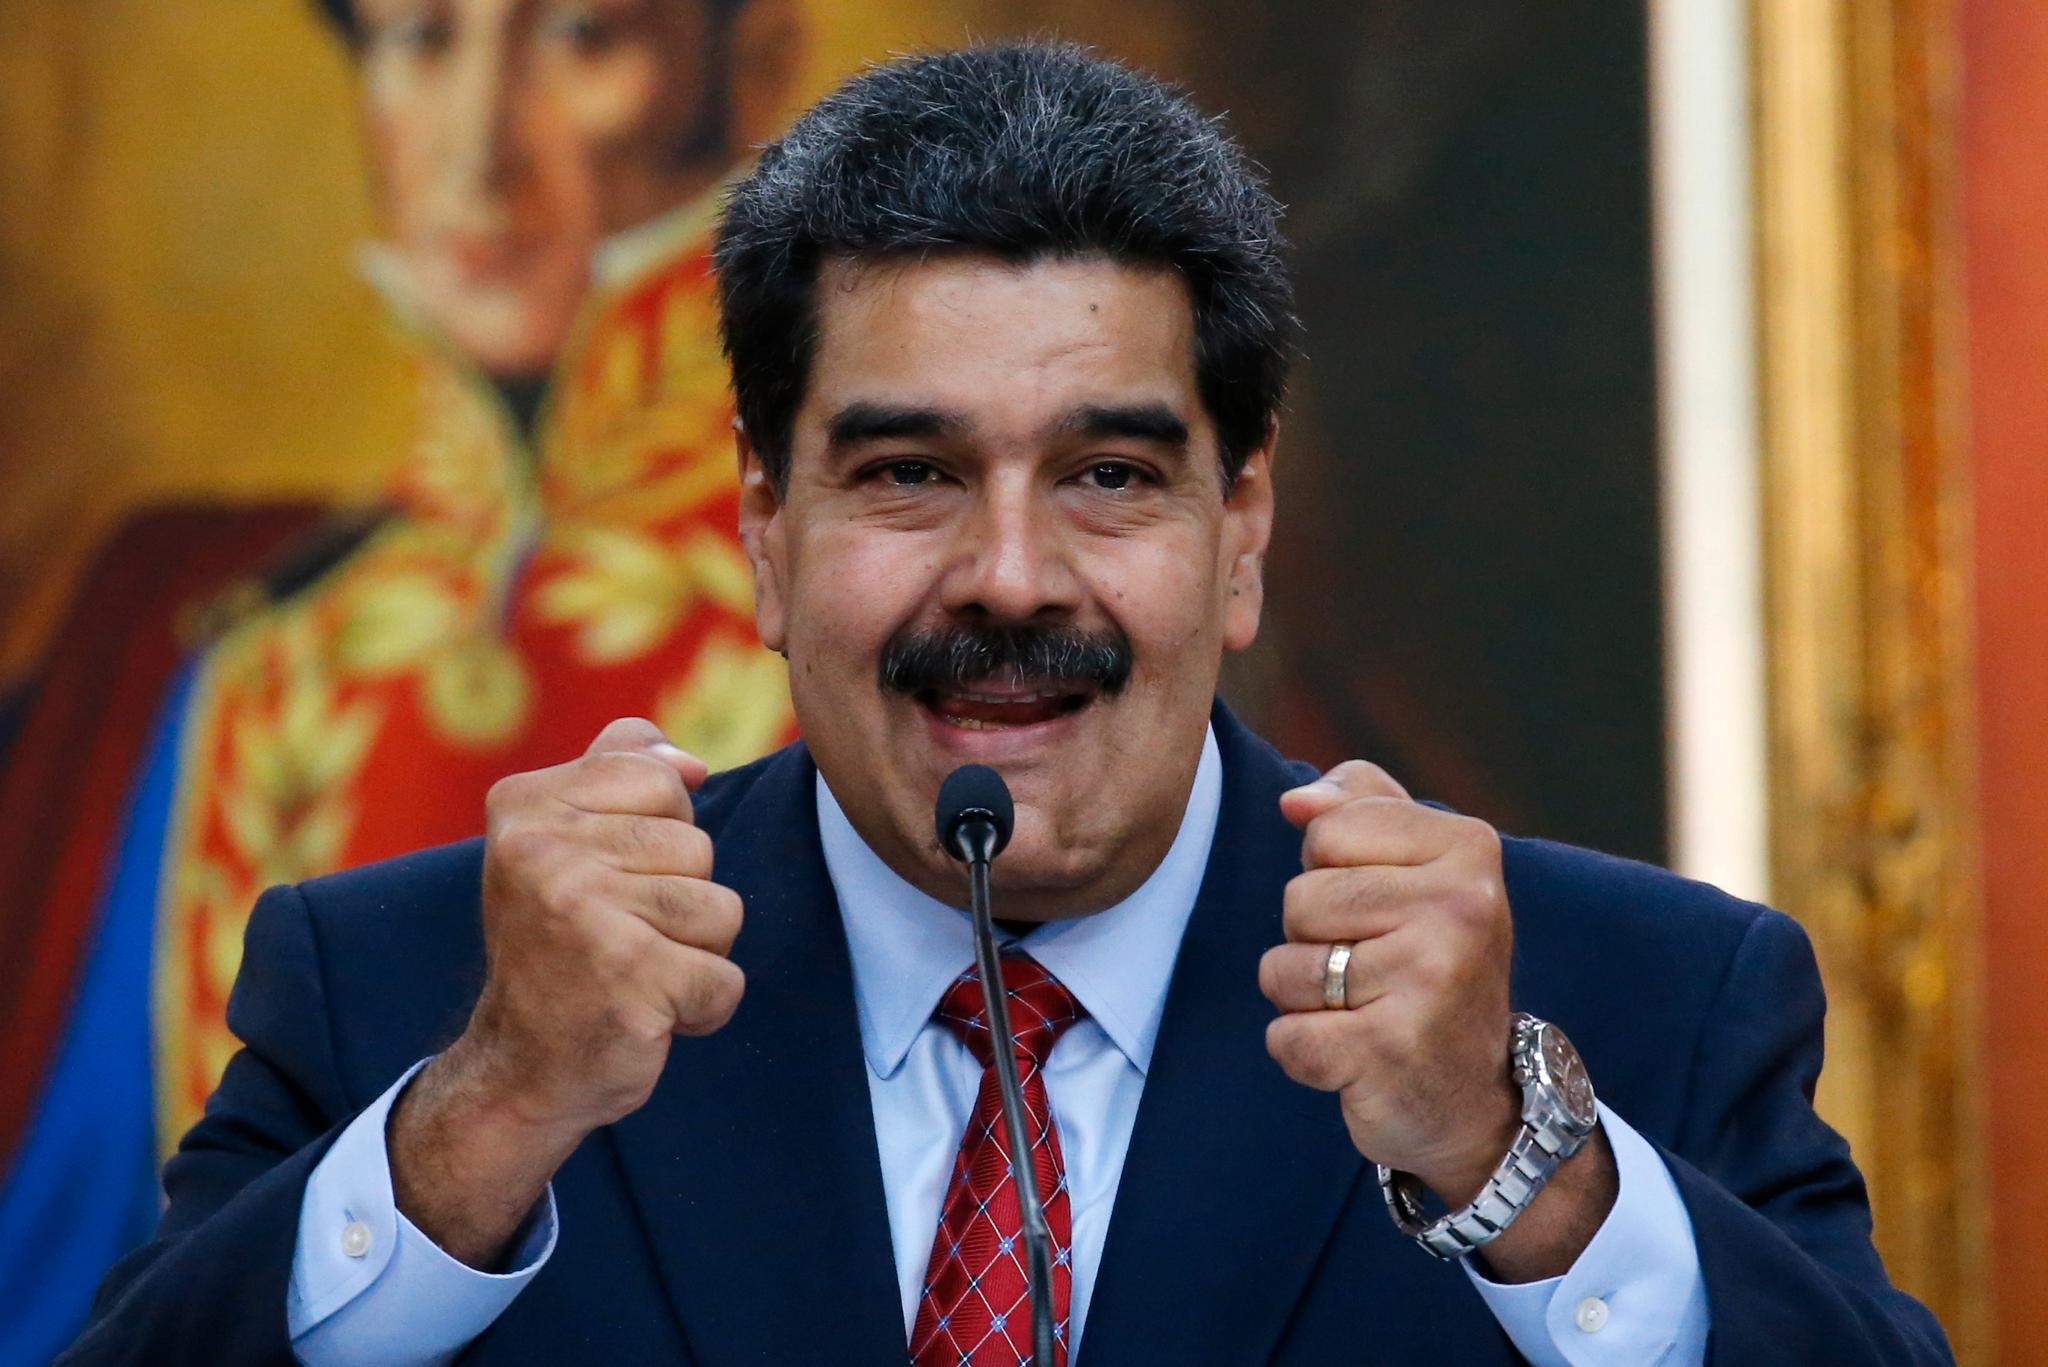 Nicolás Maduro klamrer seg til makten, men har mistet all demokratisk legitimitet.